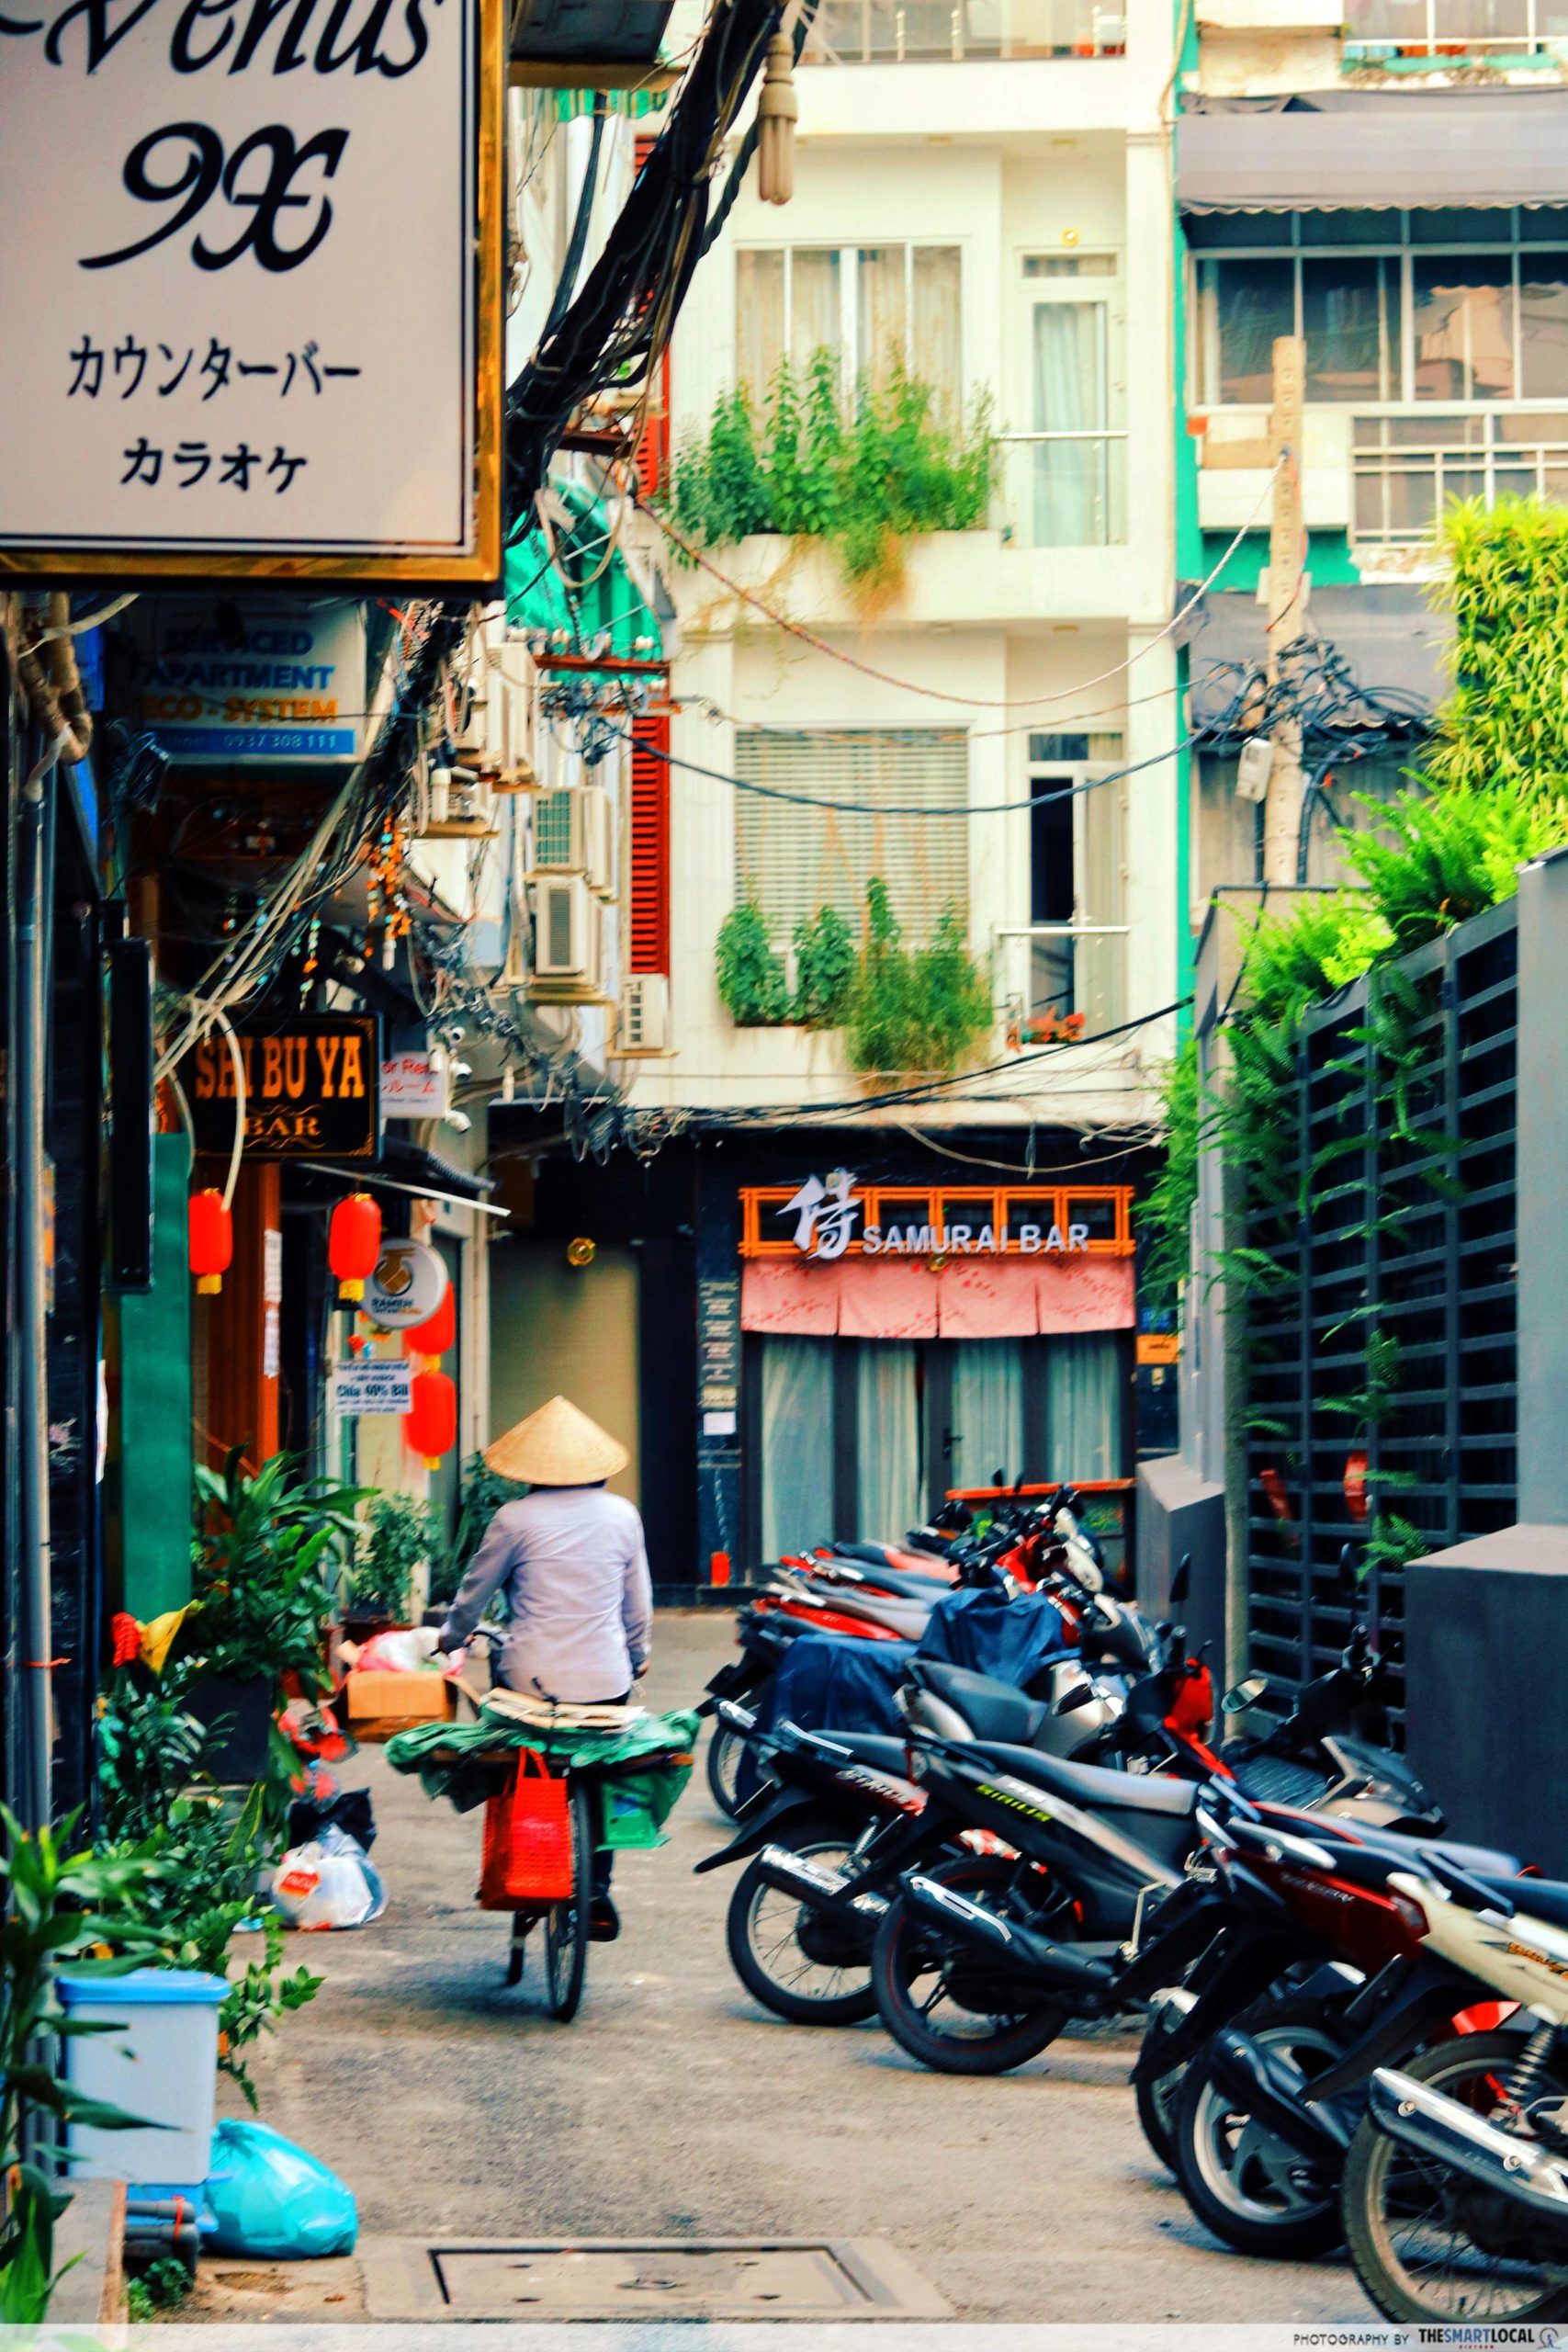 Japan Town Saigon by day